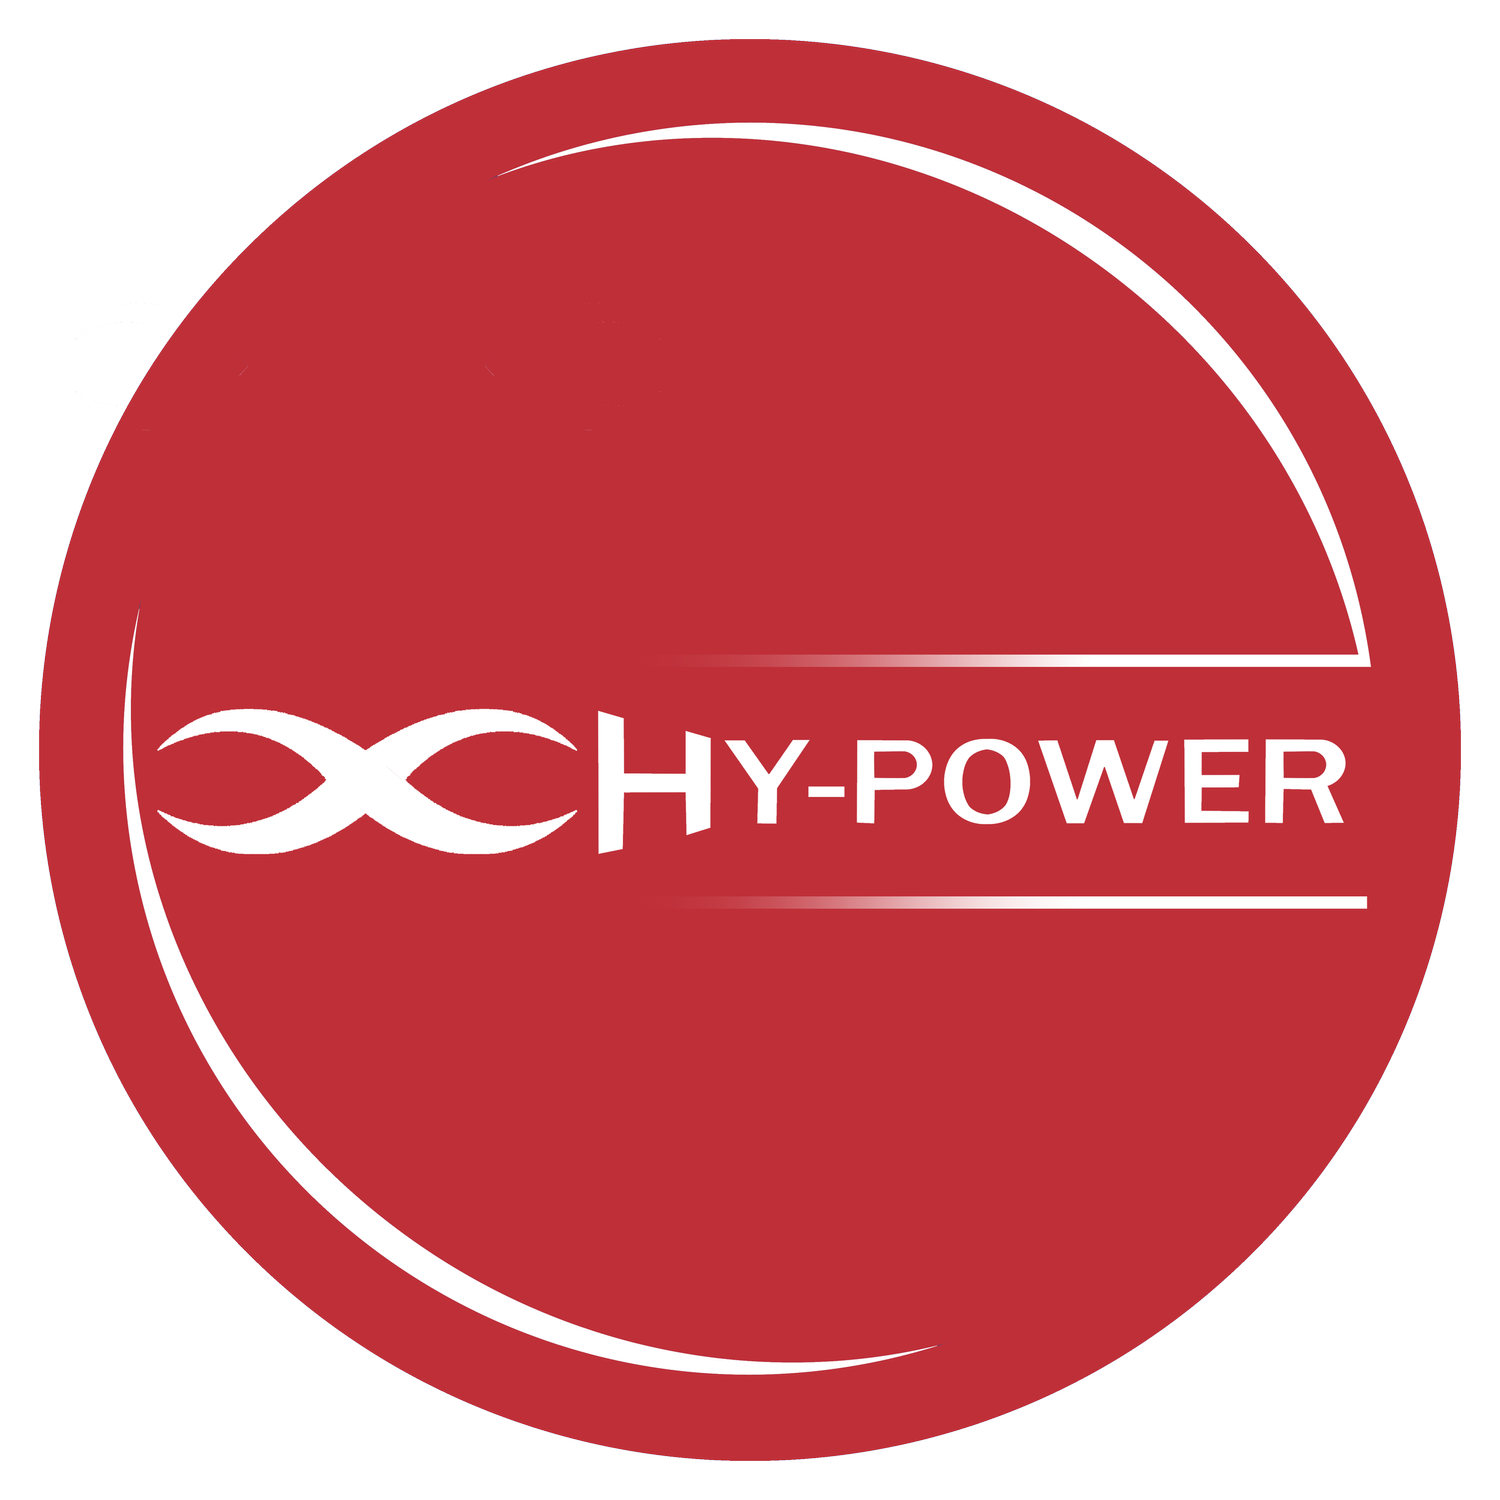 HyPower Bristol